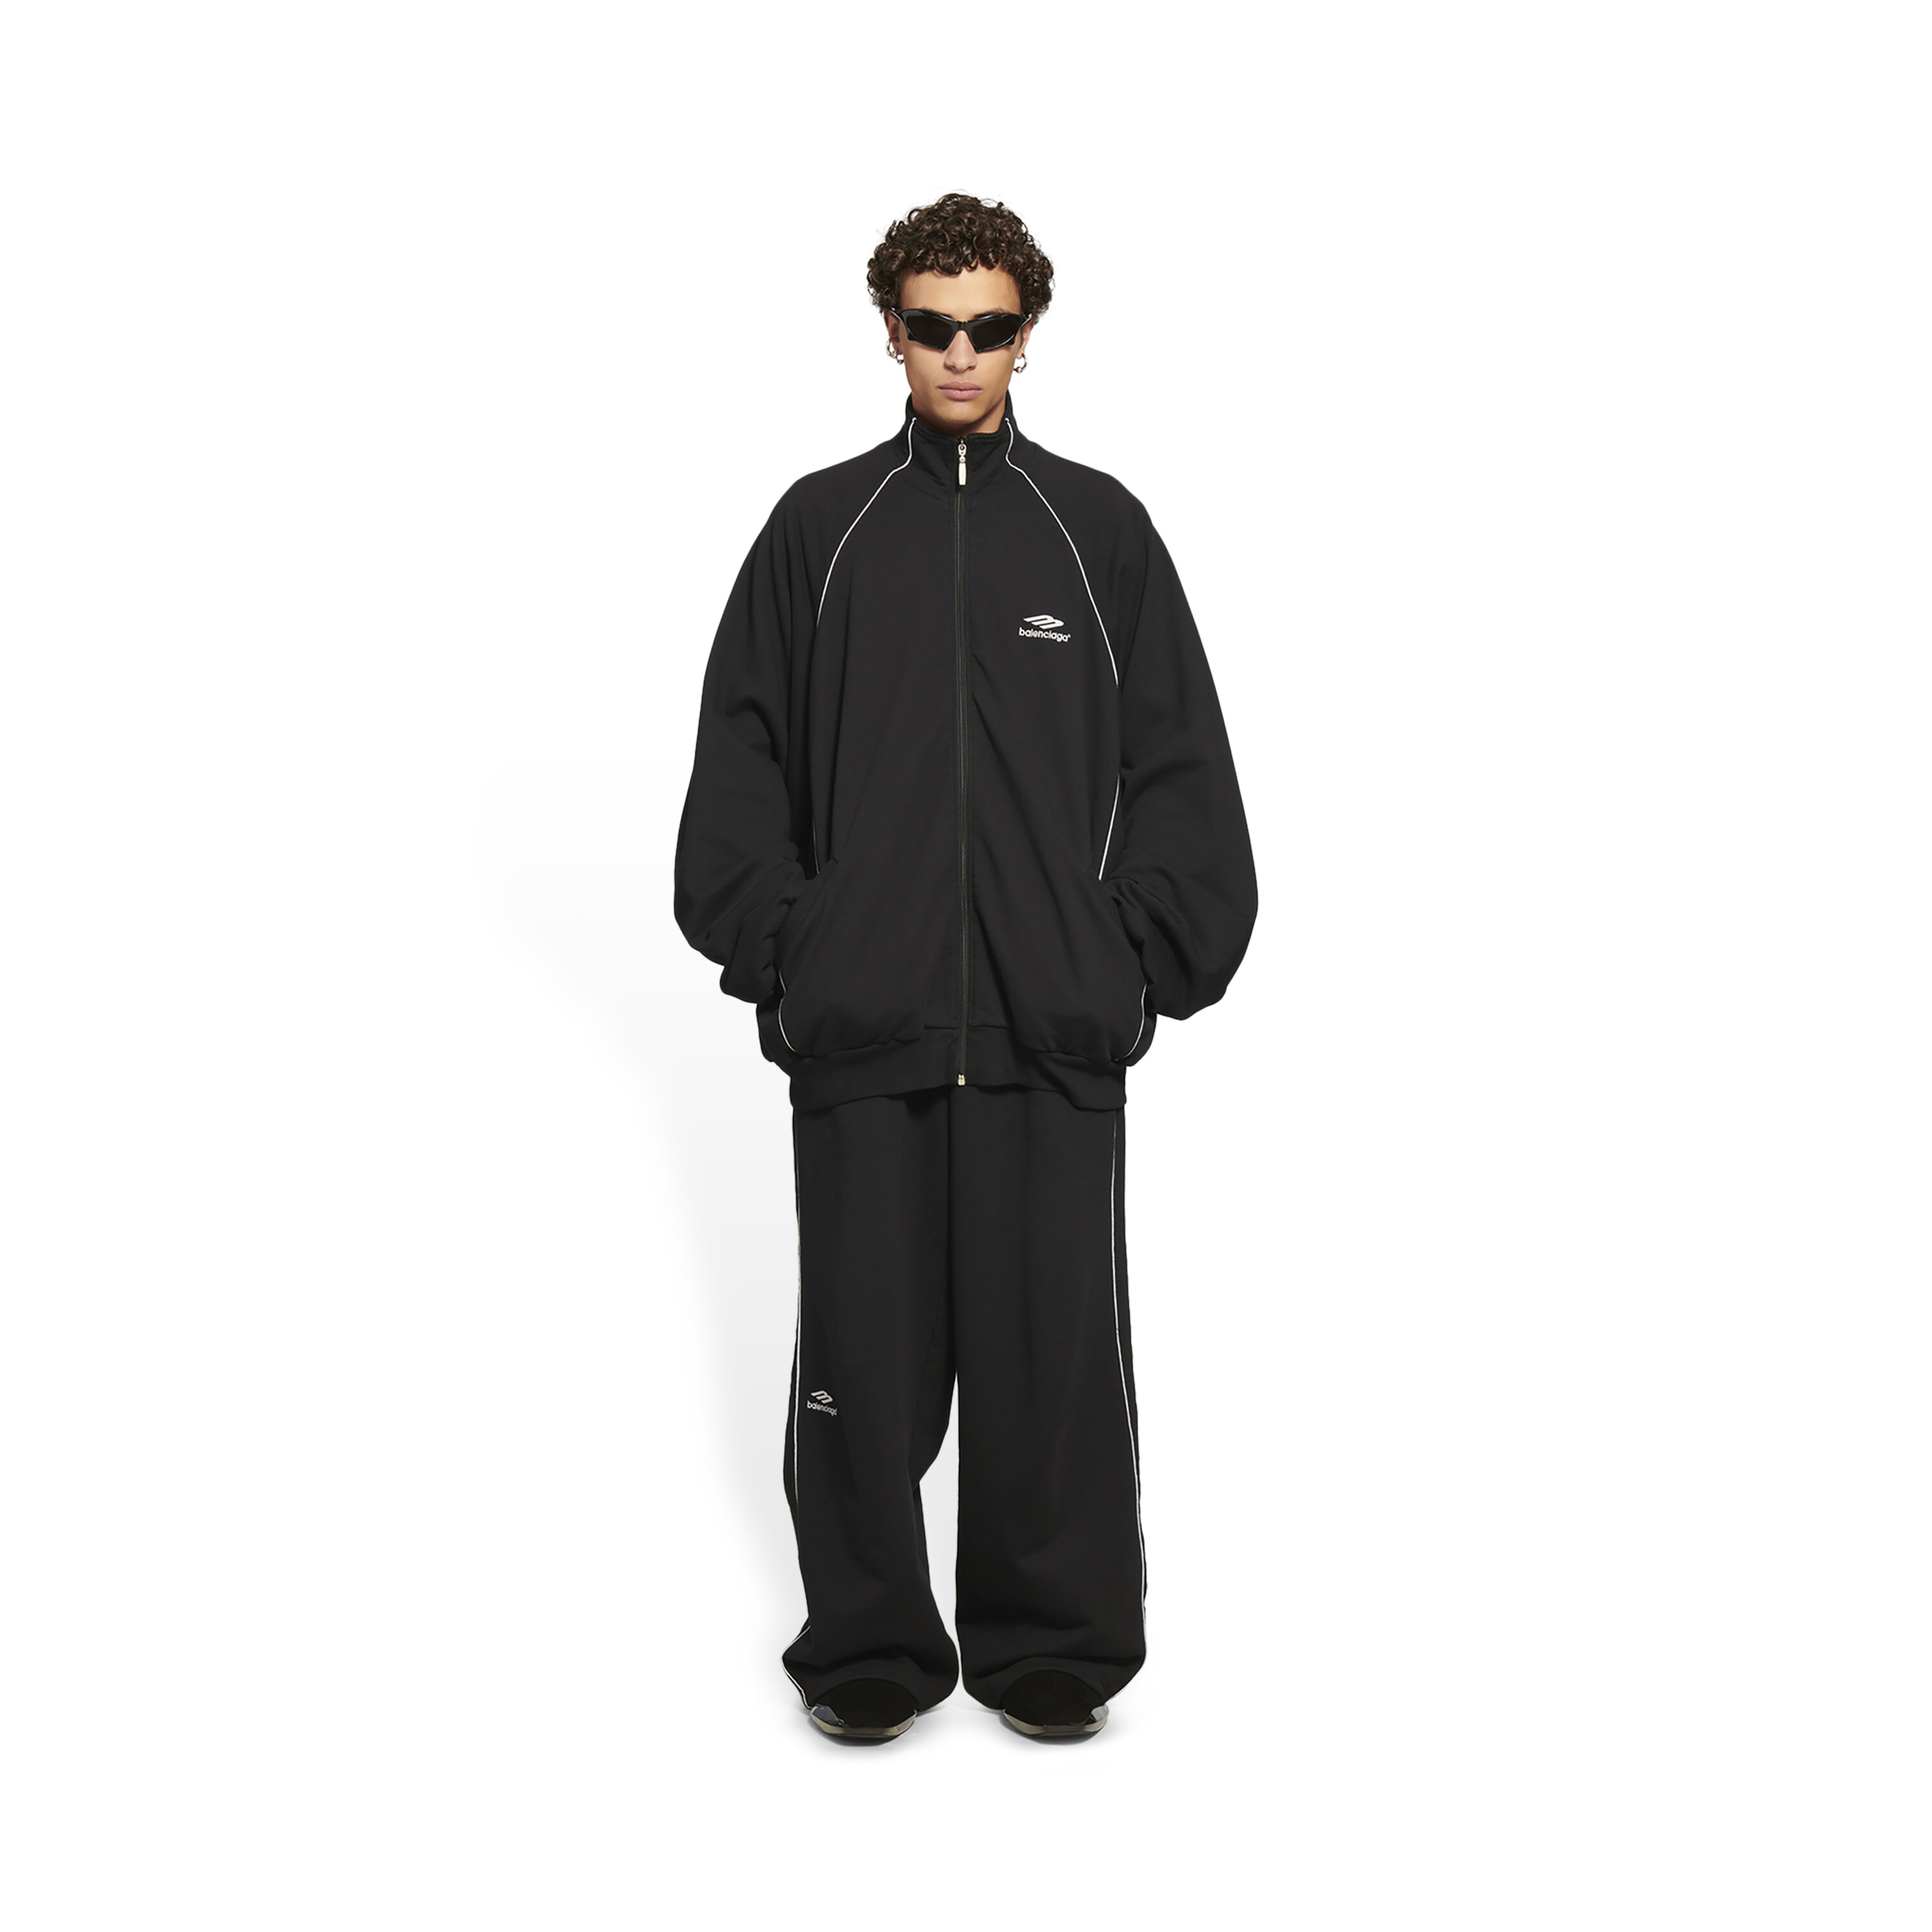 ありません Balenciaga - Balenciaga 3B SPORTS TRACK jacket サイズ1の通販 by yuto's